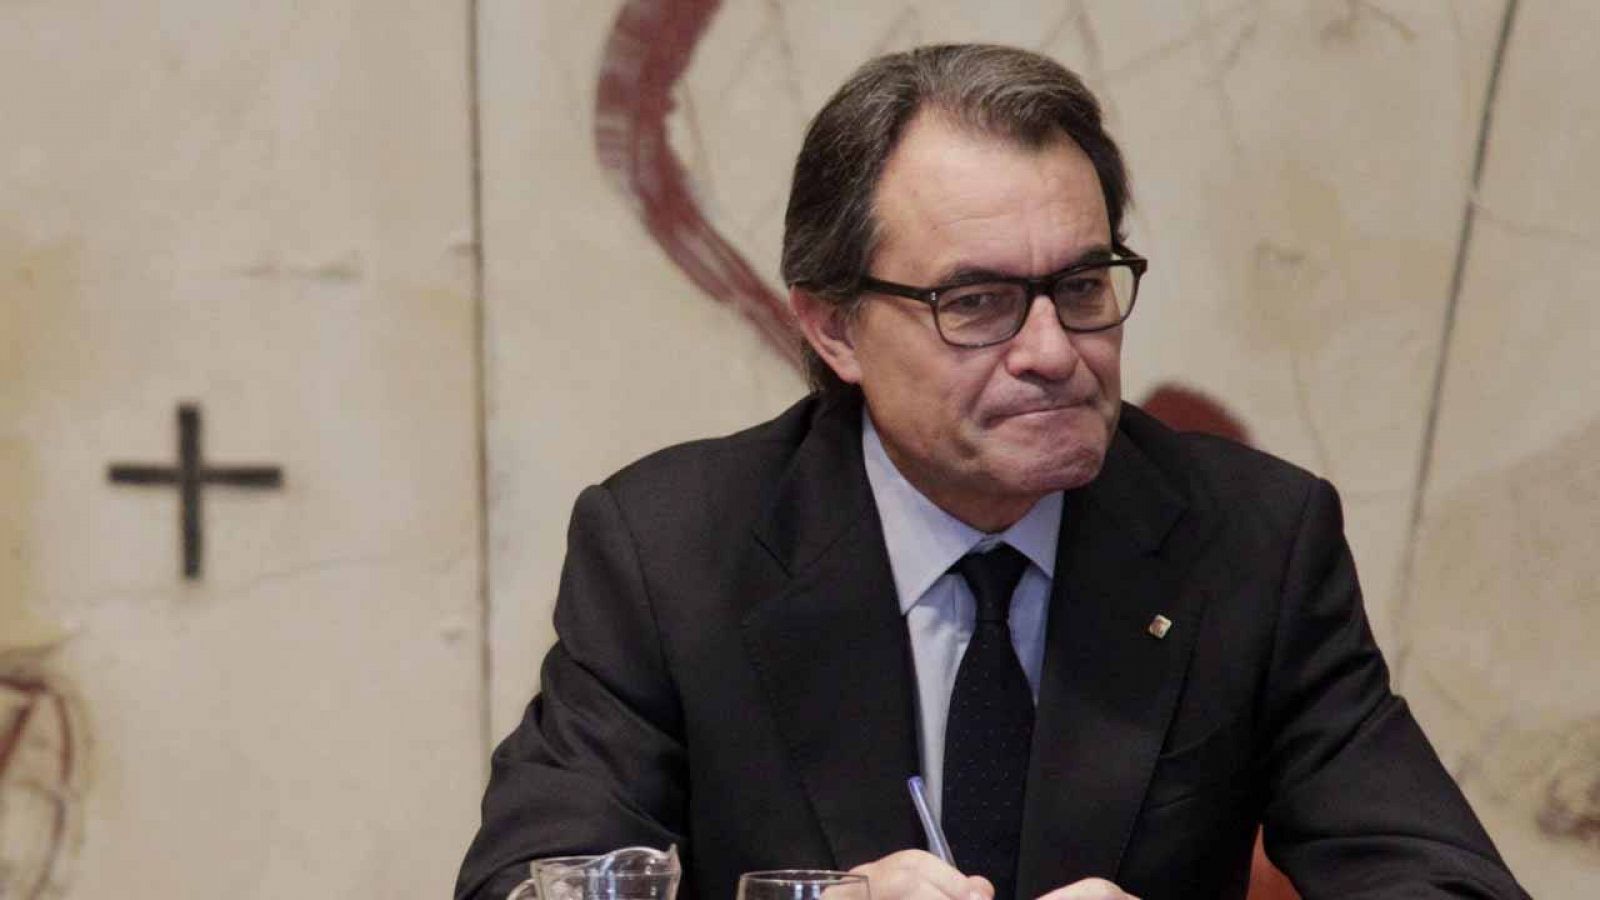 El presidenta de la Generalitat en funciones, Artur Mas, en la reunión semanal del Govern